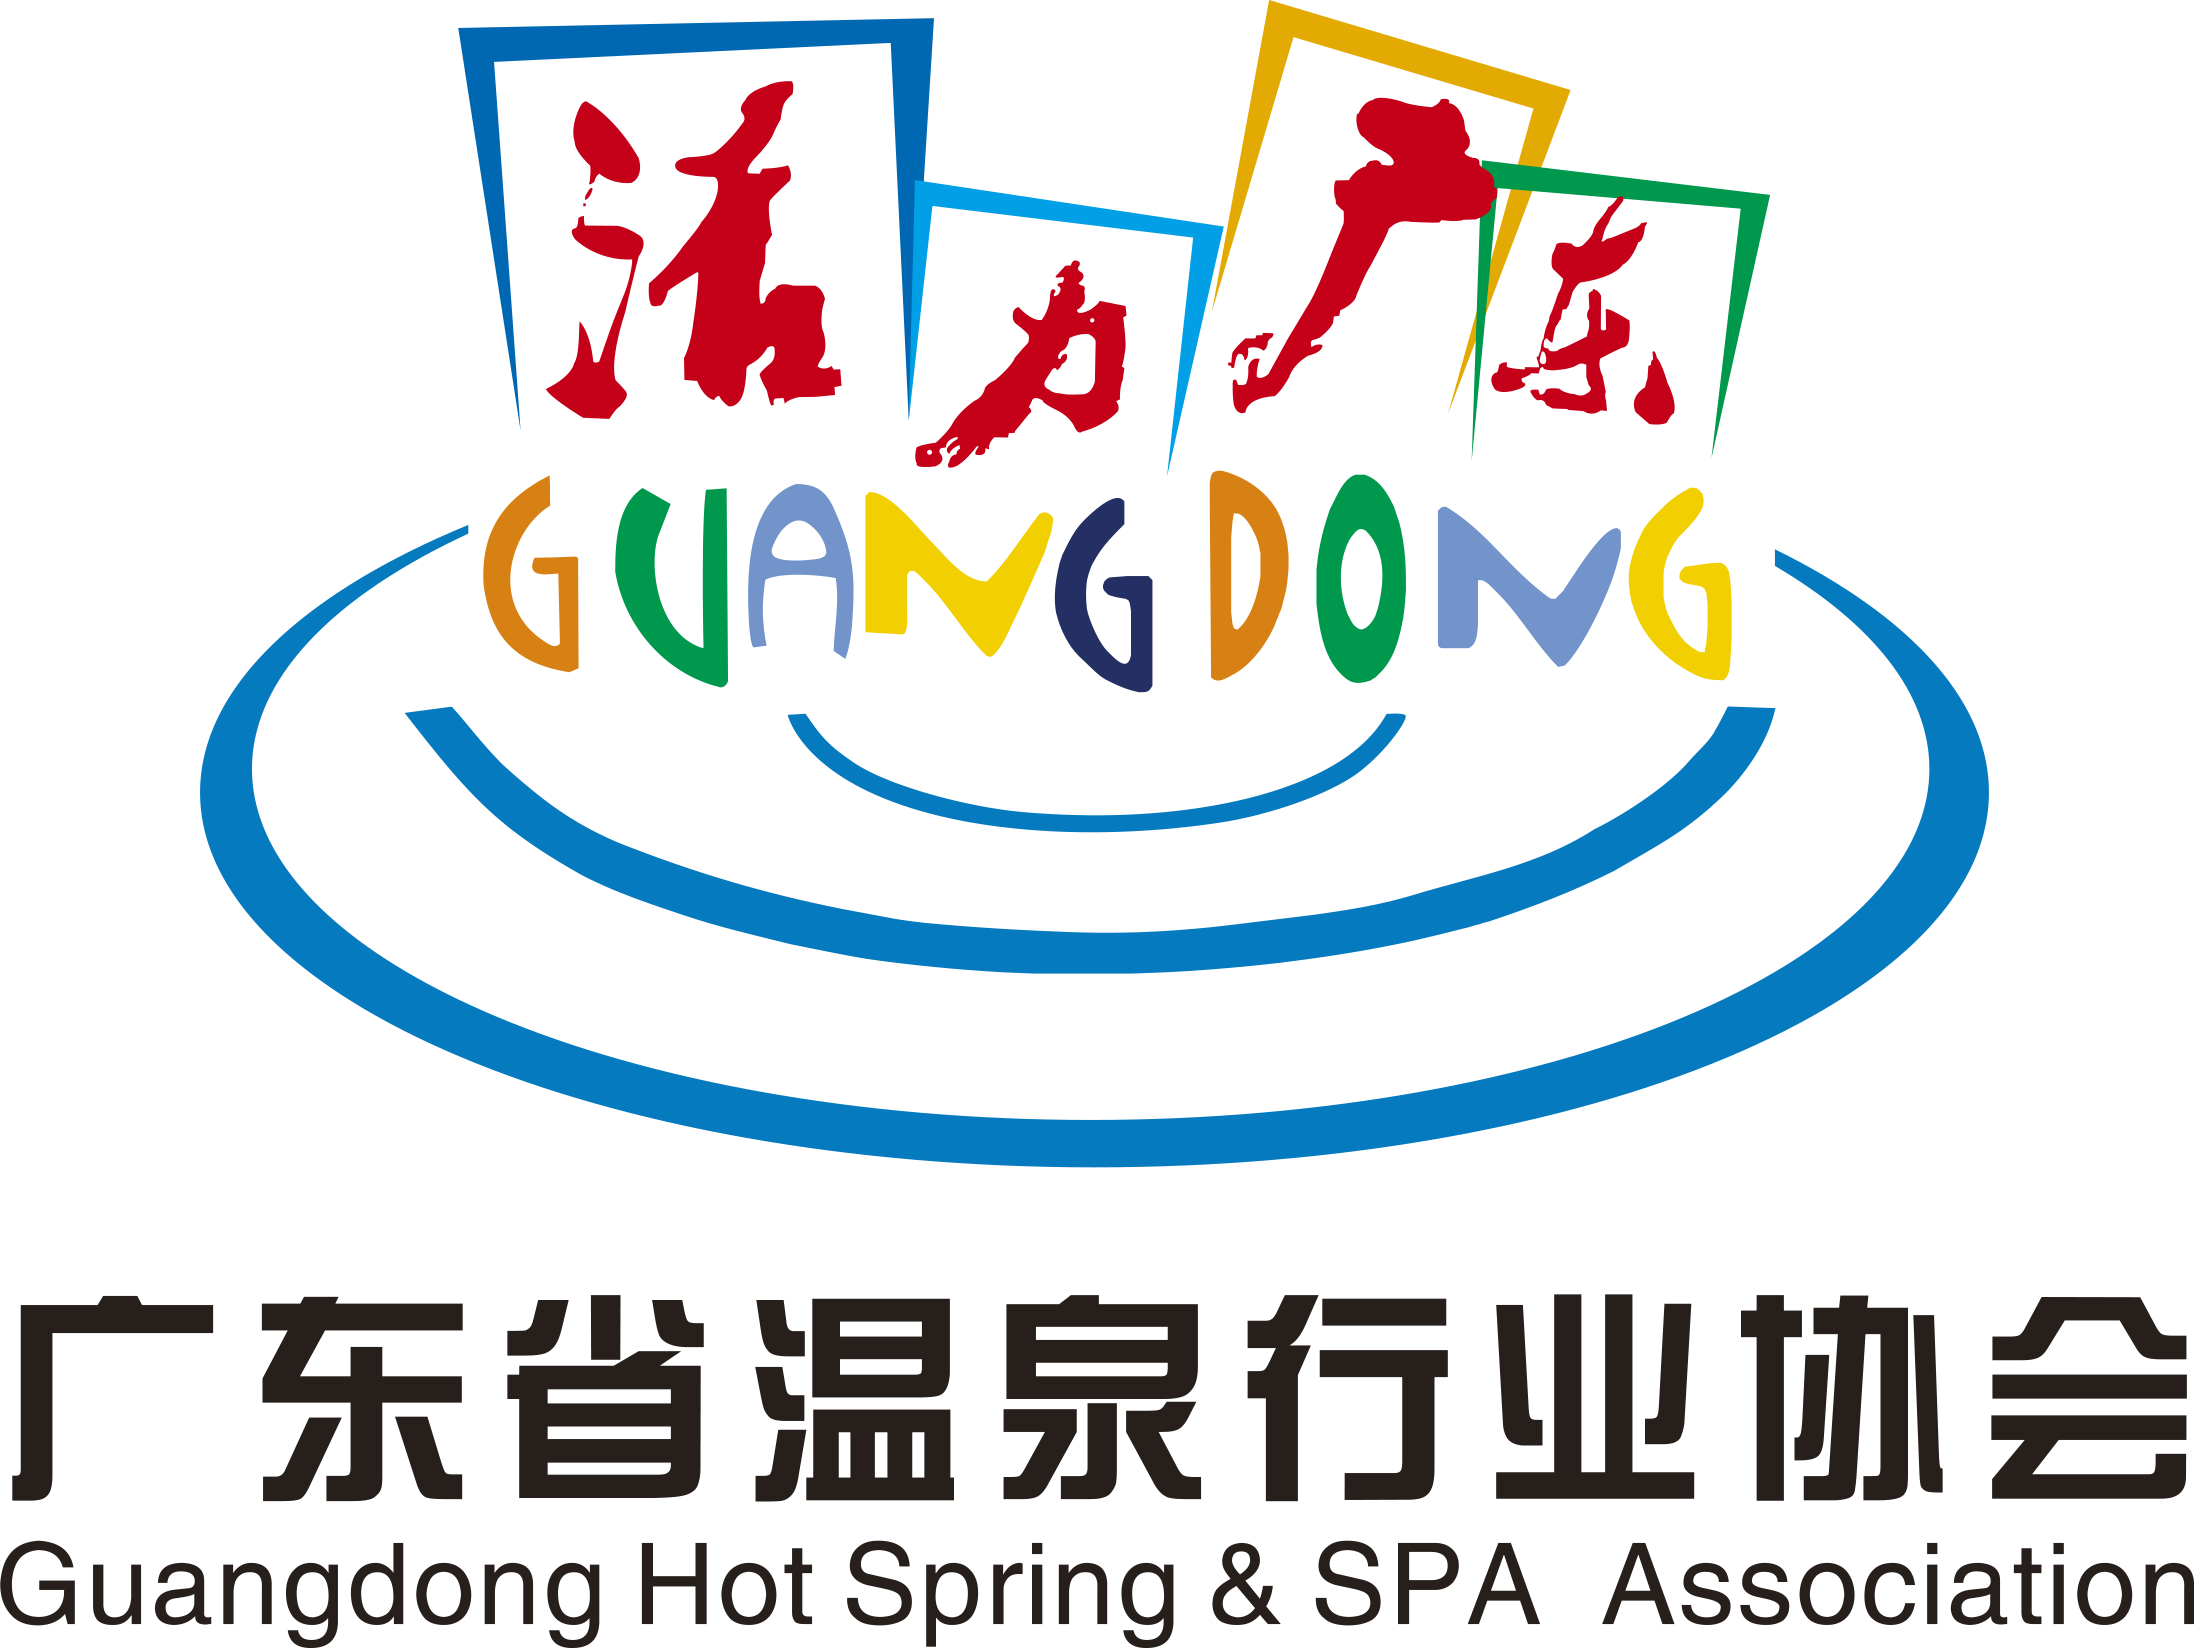 温泉协会新logo